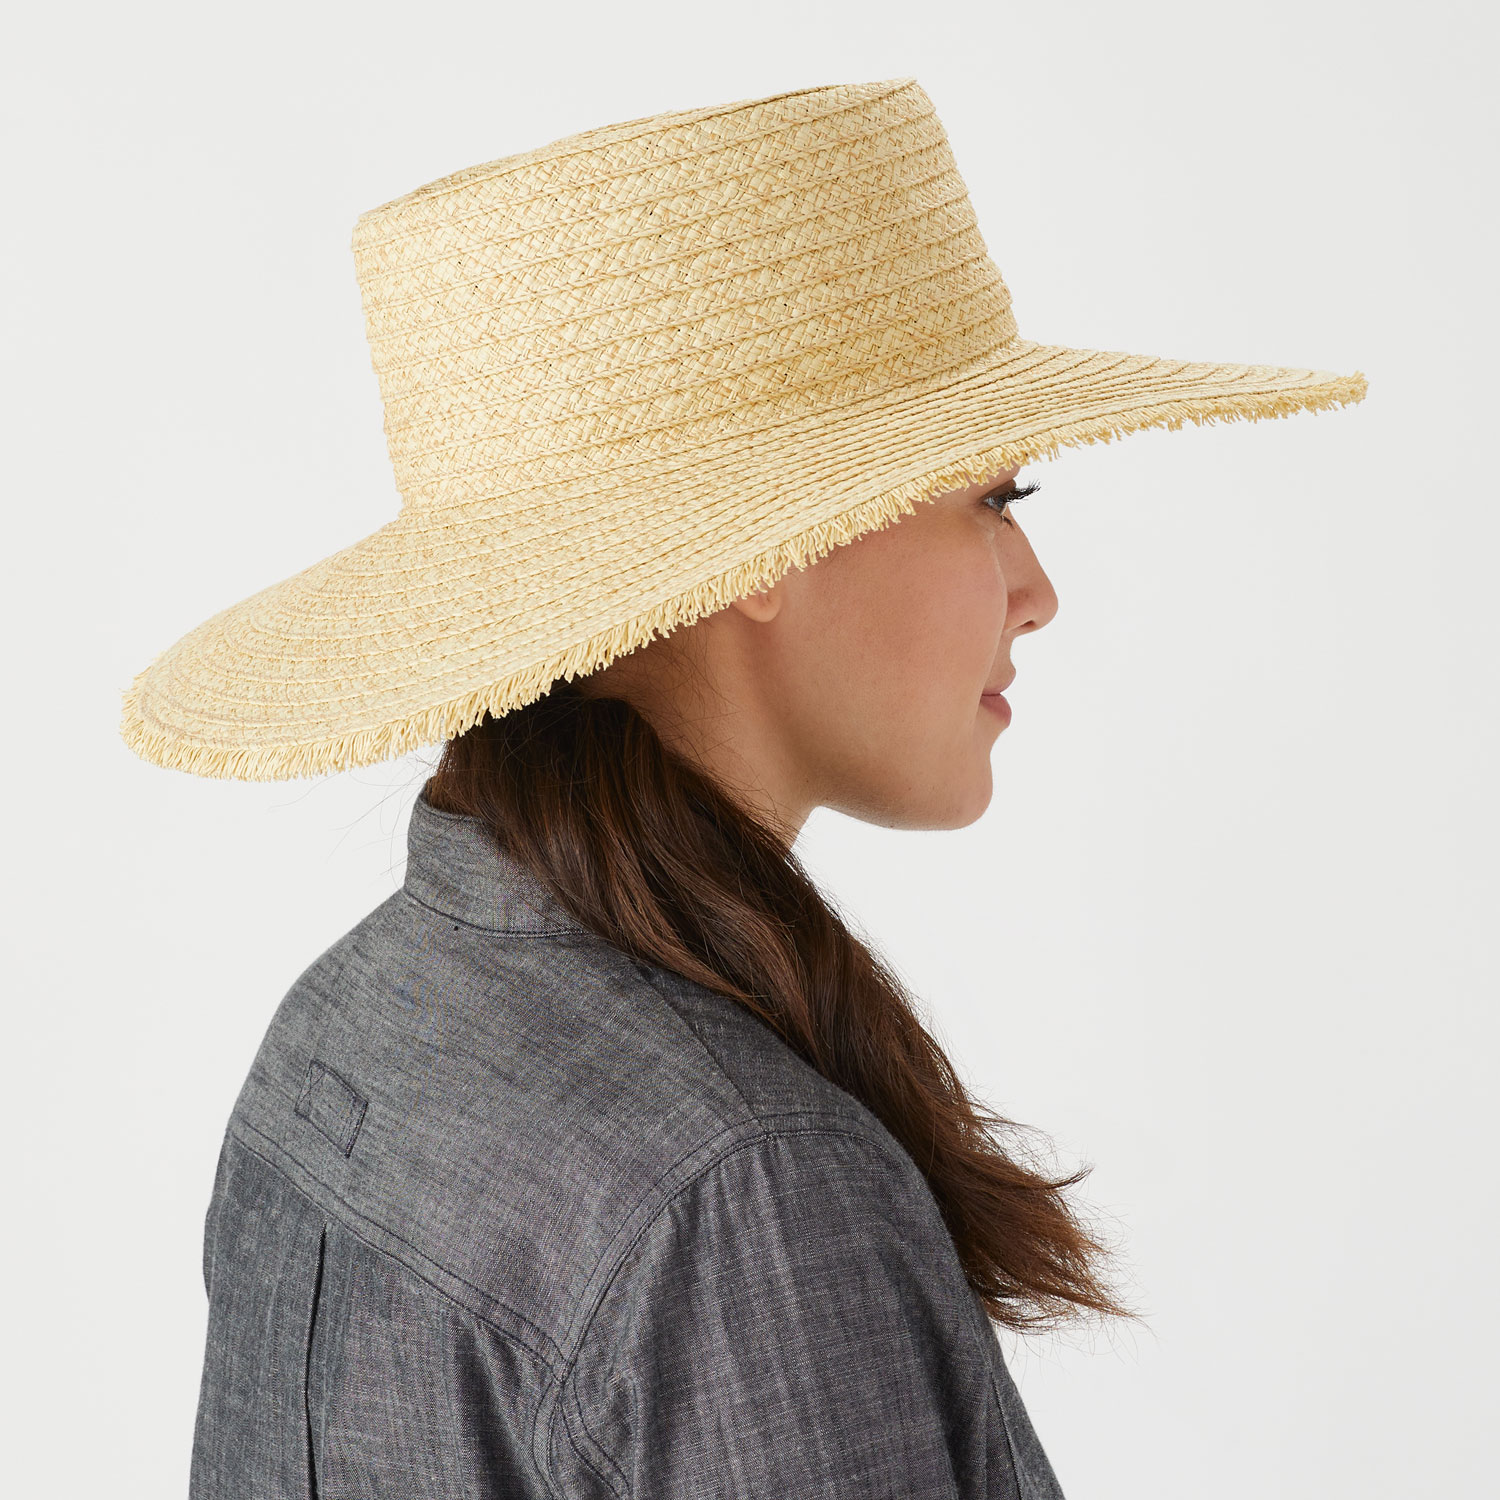 Women's Straw Boater Hat